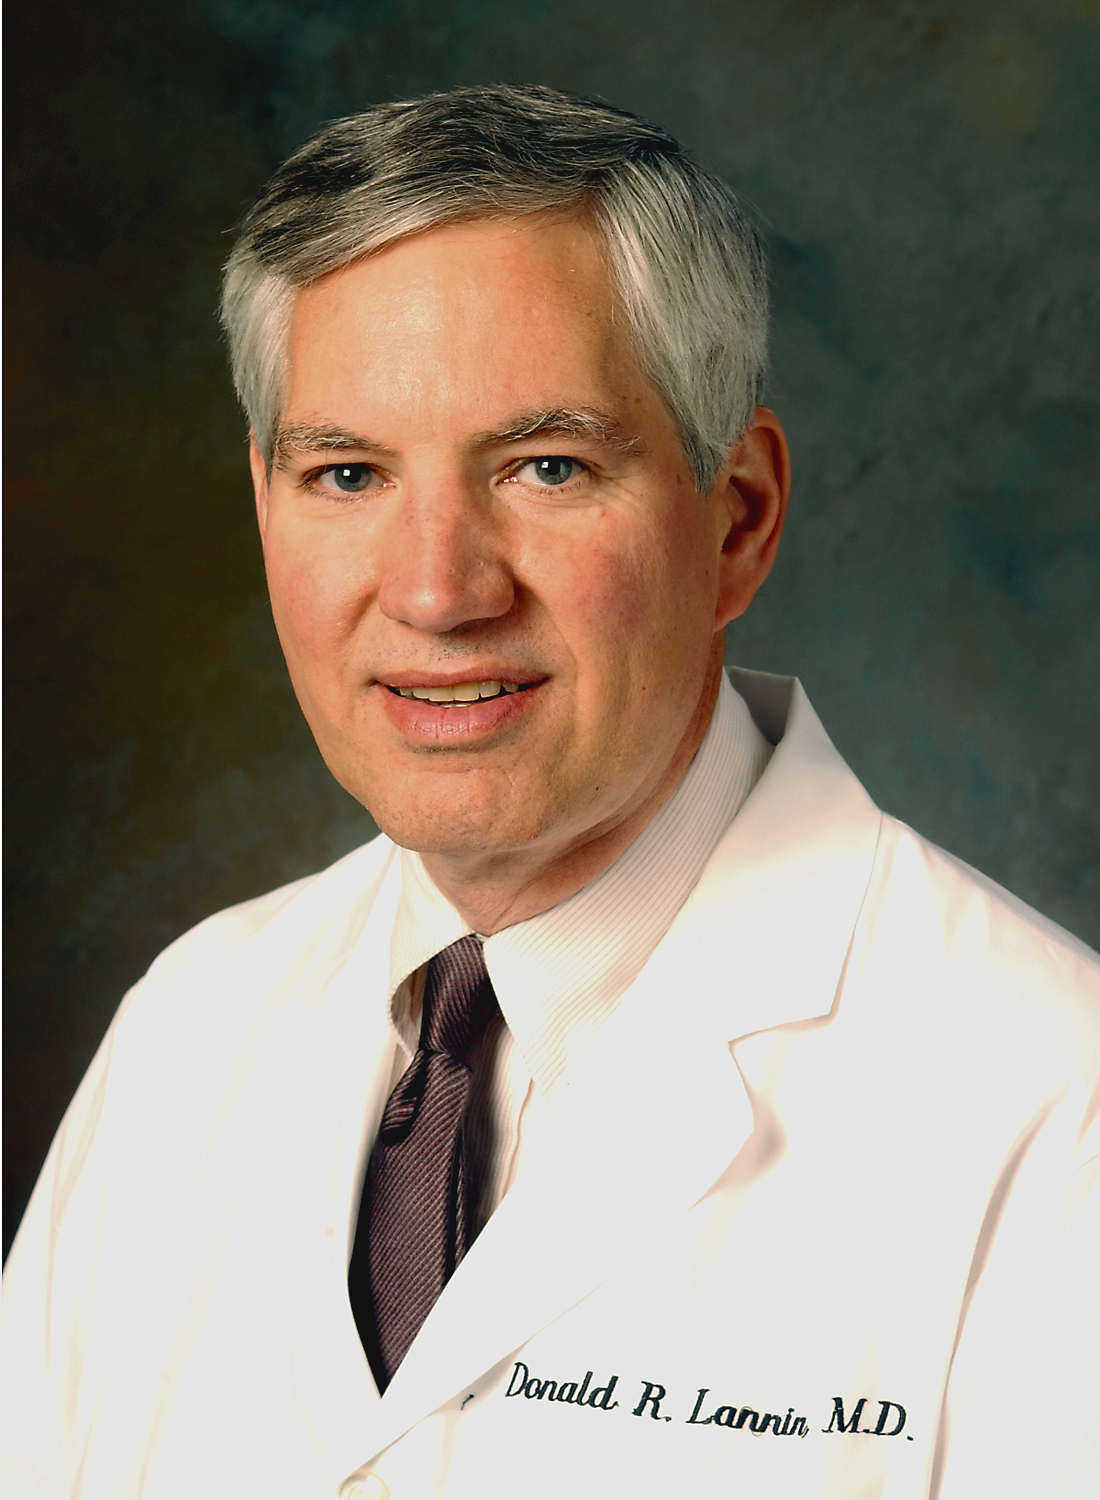 Donald R. Lannin, profesor chirurgie, onkolog, výkonný ředitel Yale Cancer Center:  „Jsou malé rakoviny prsu dobré, protože jsou malé nebo malé, protože jsou dobré?“